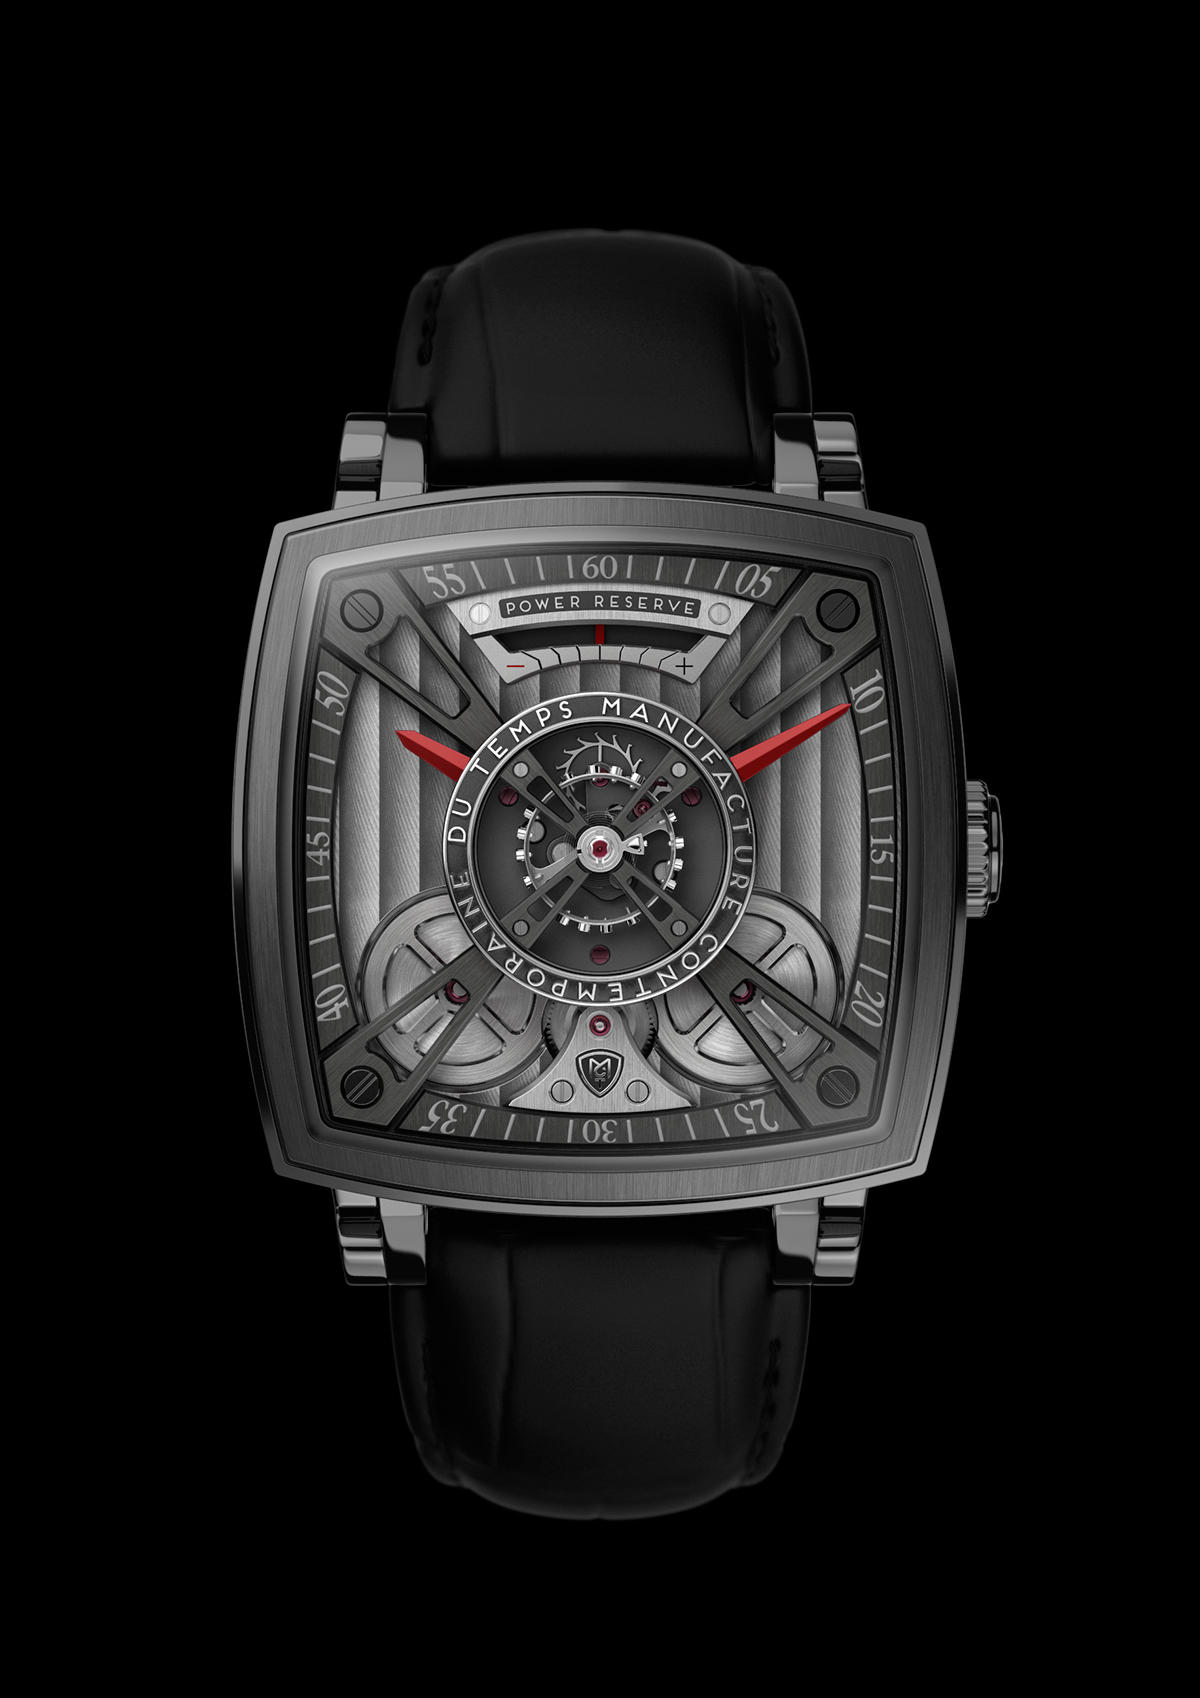 Watches watch design luxury design horology